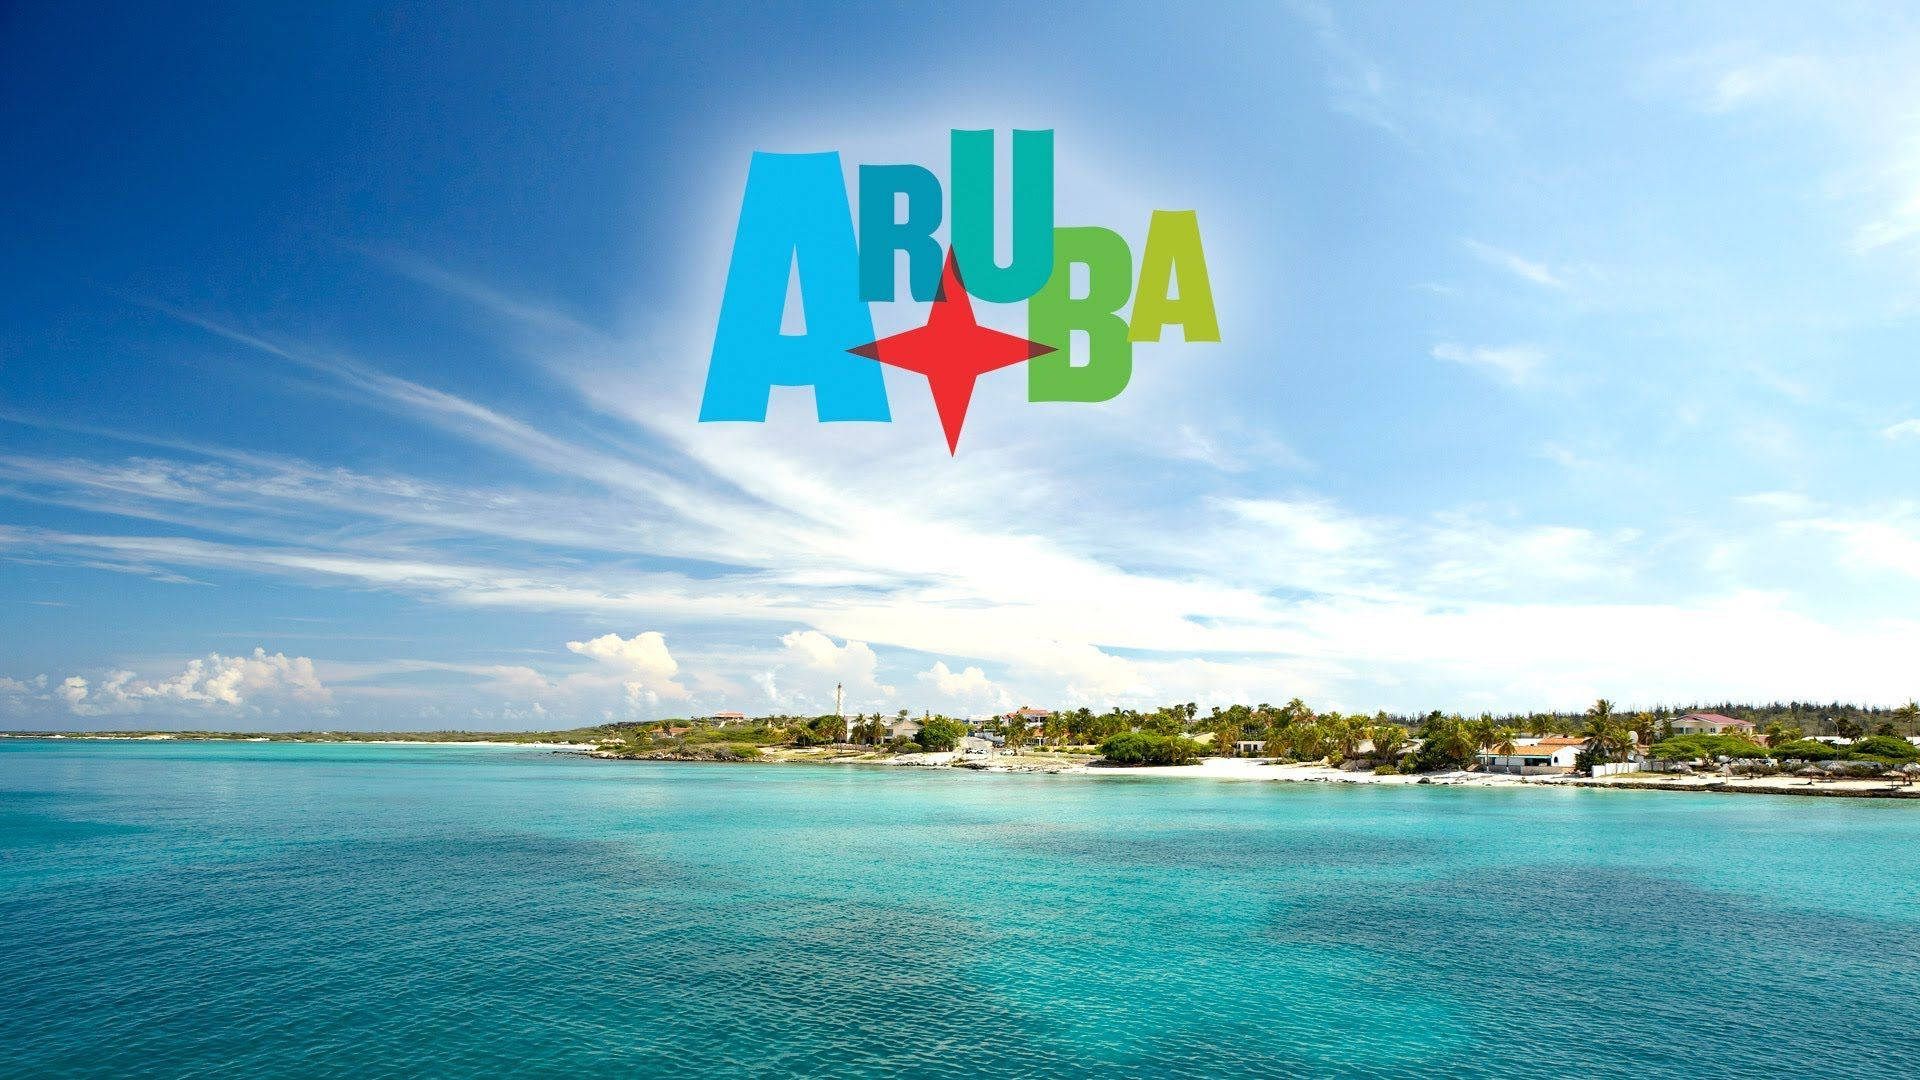 Aruba Beach Poster